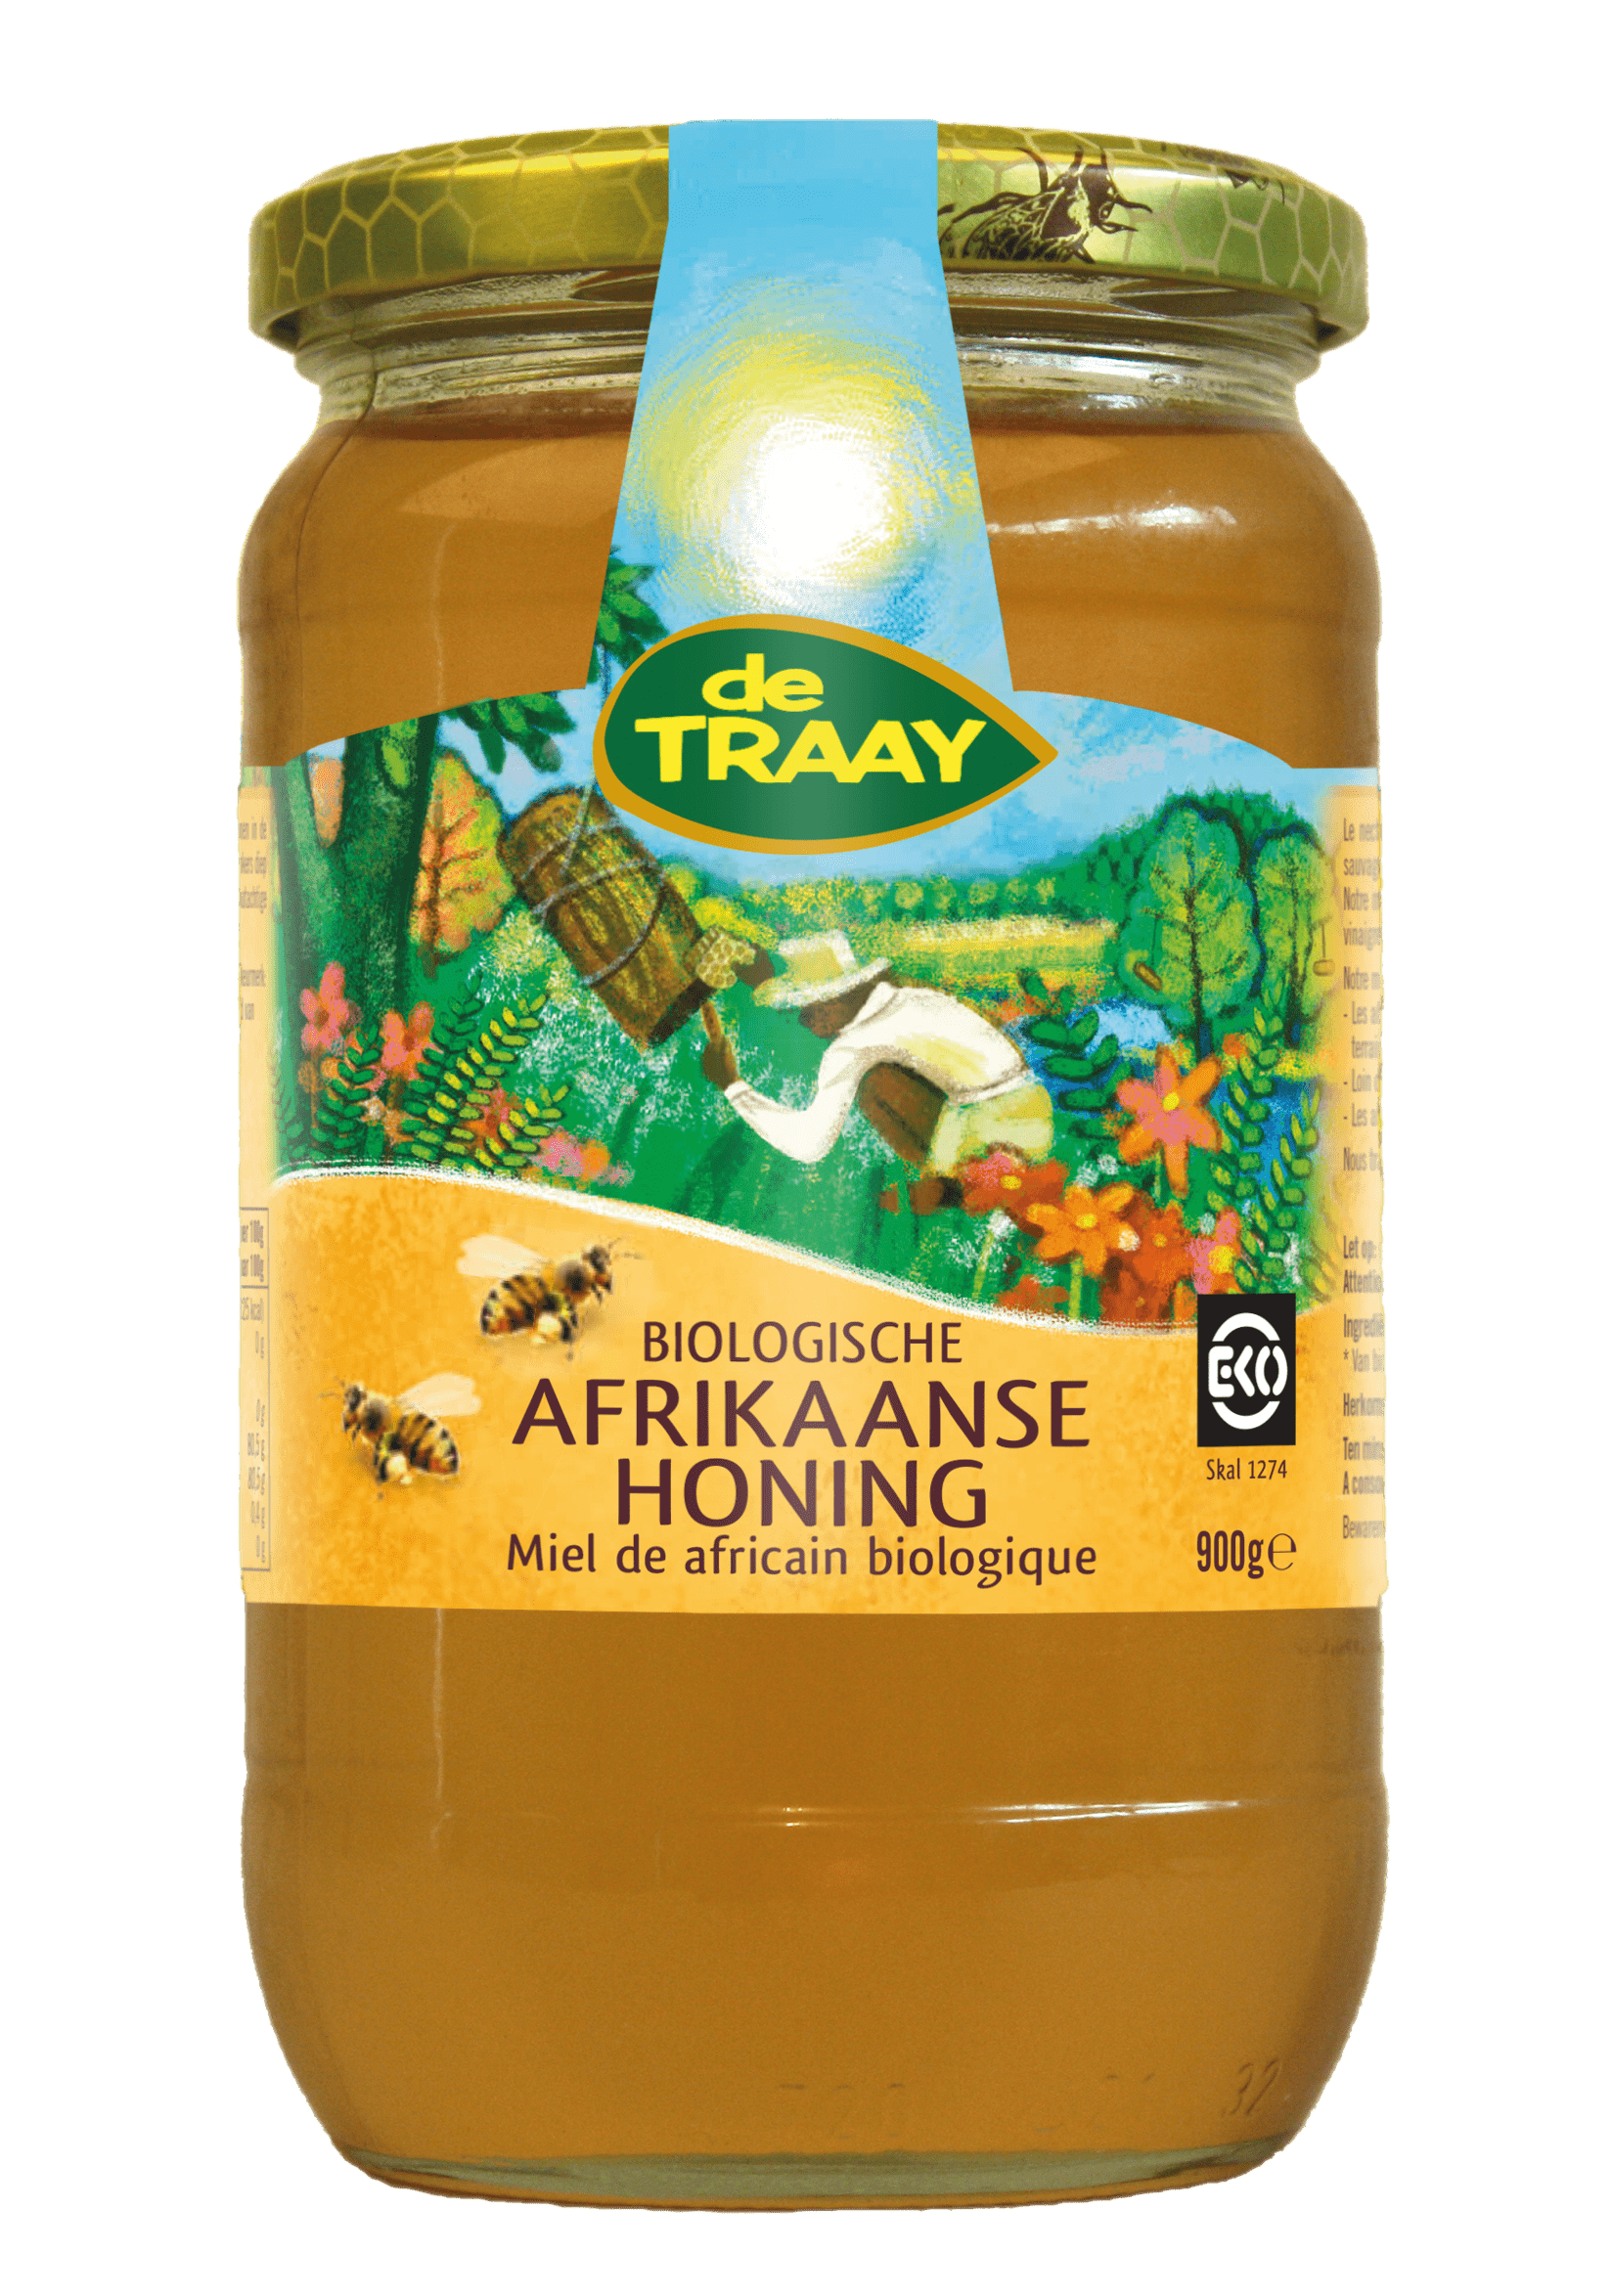 De Traay Miel de africain bio 900g